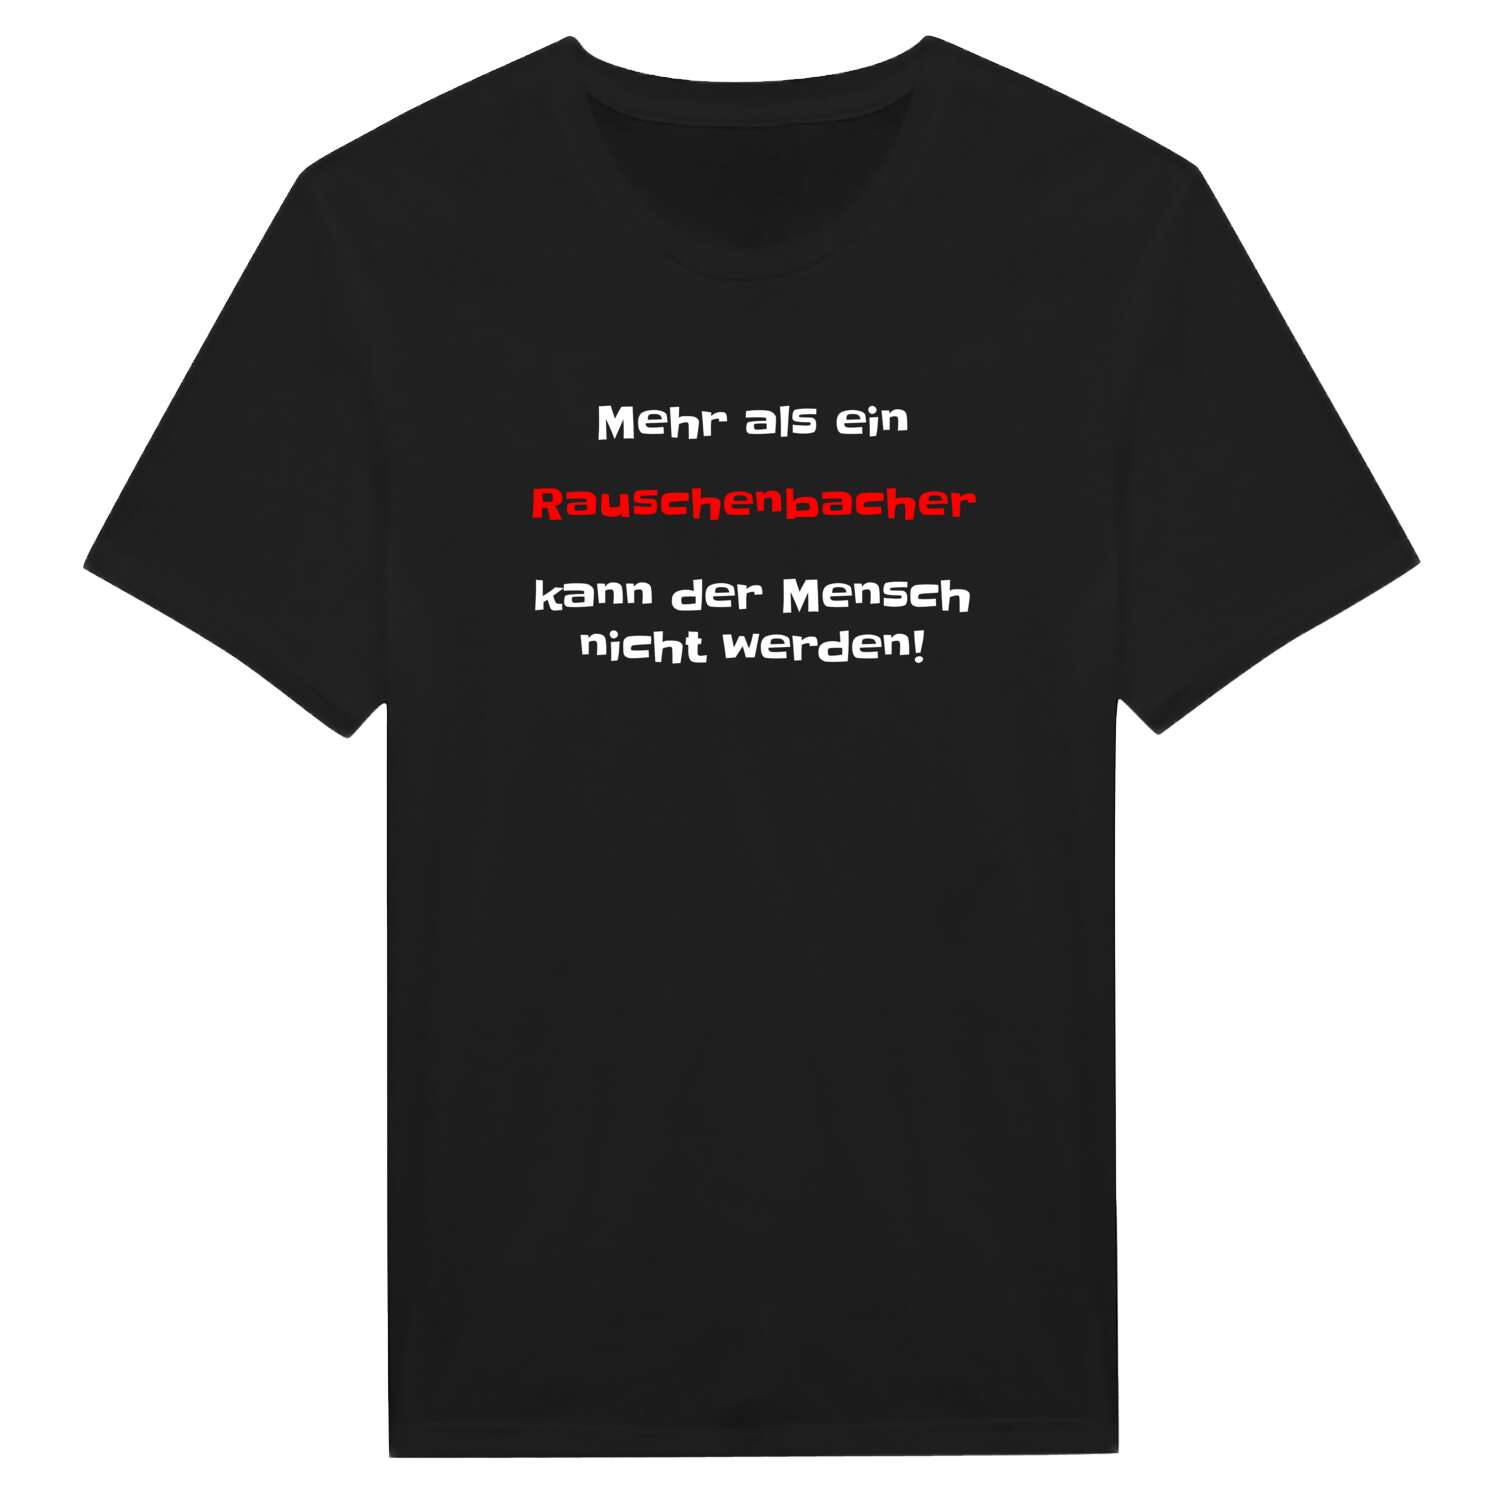 Rauschenbach T-Shirt »Mehr als ein«